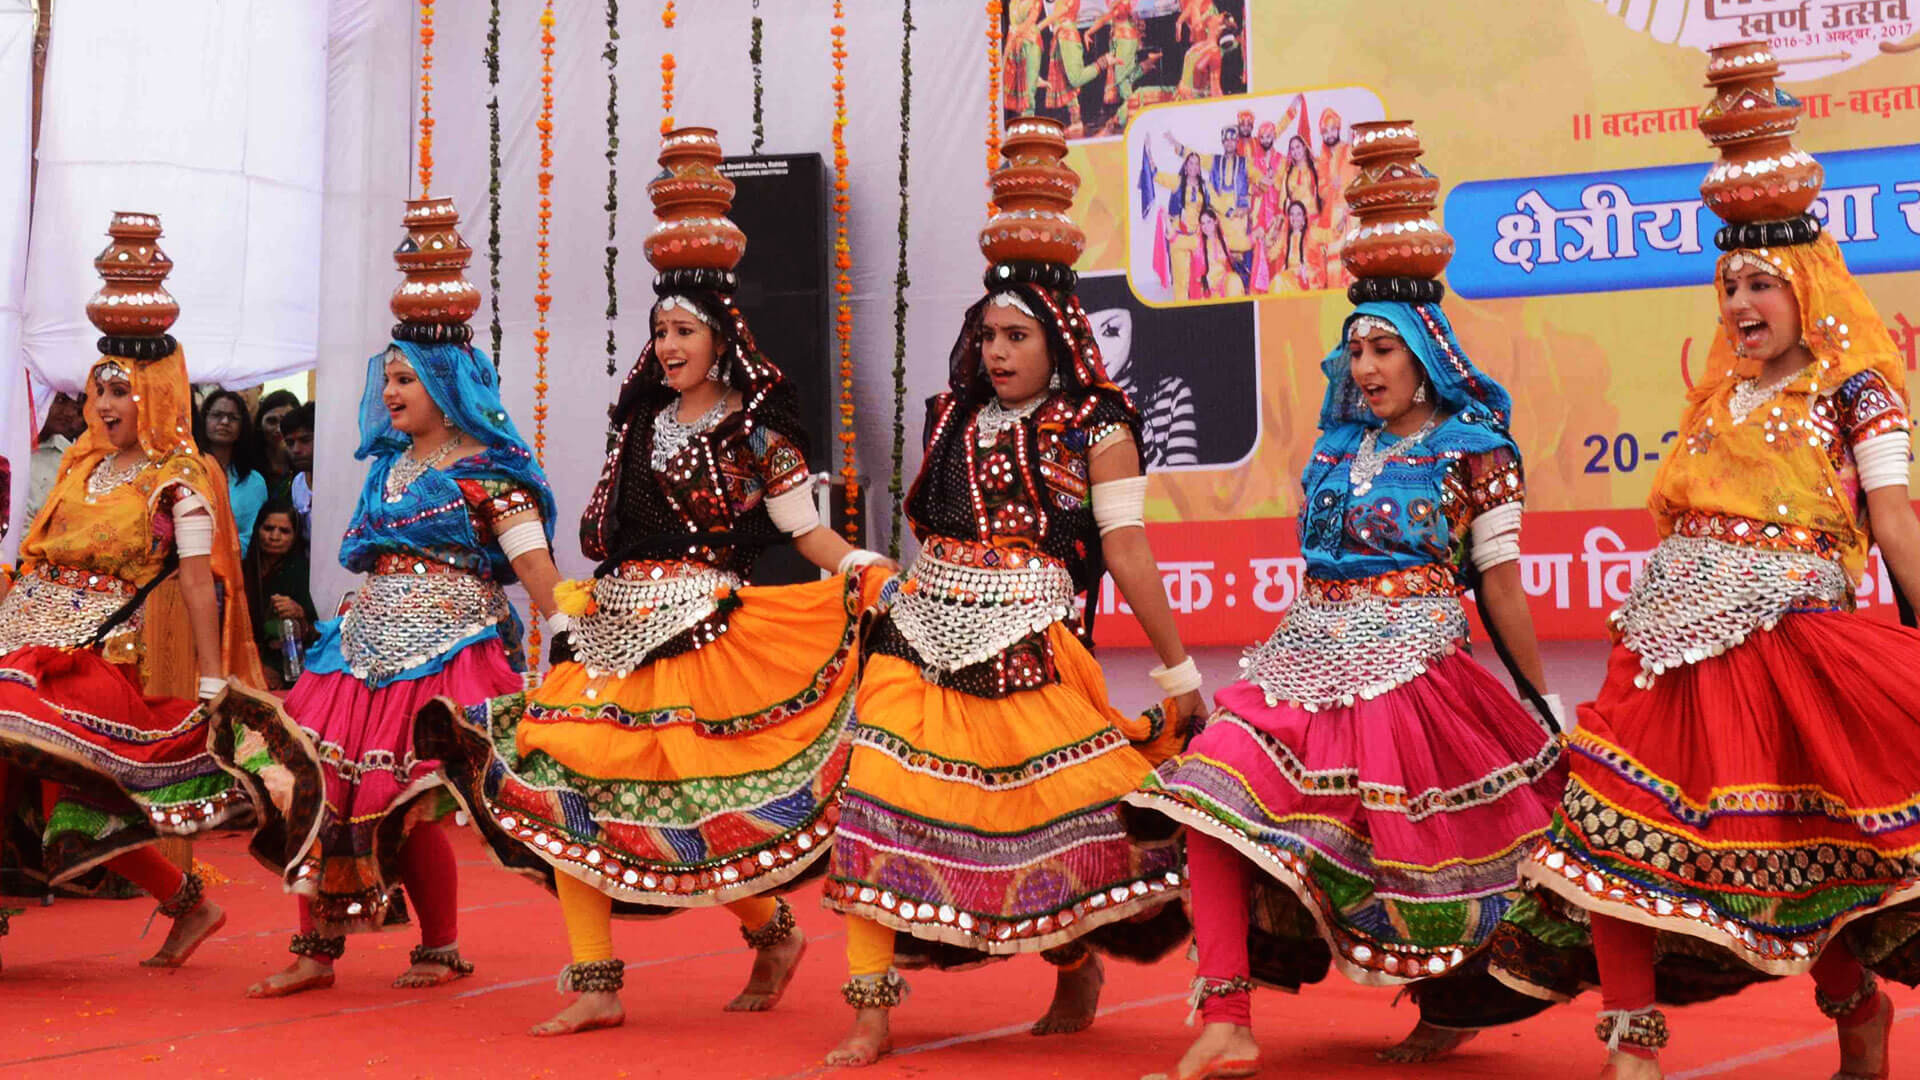 Kartik Cultural Festival in Gurgaon